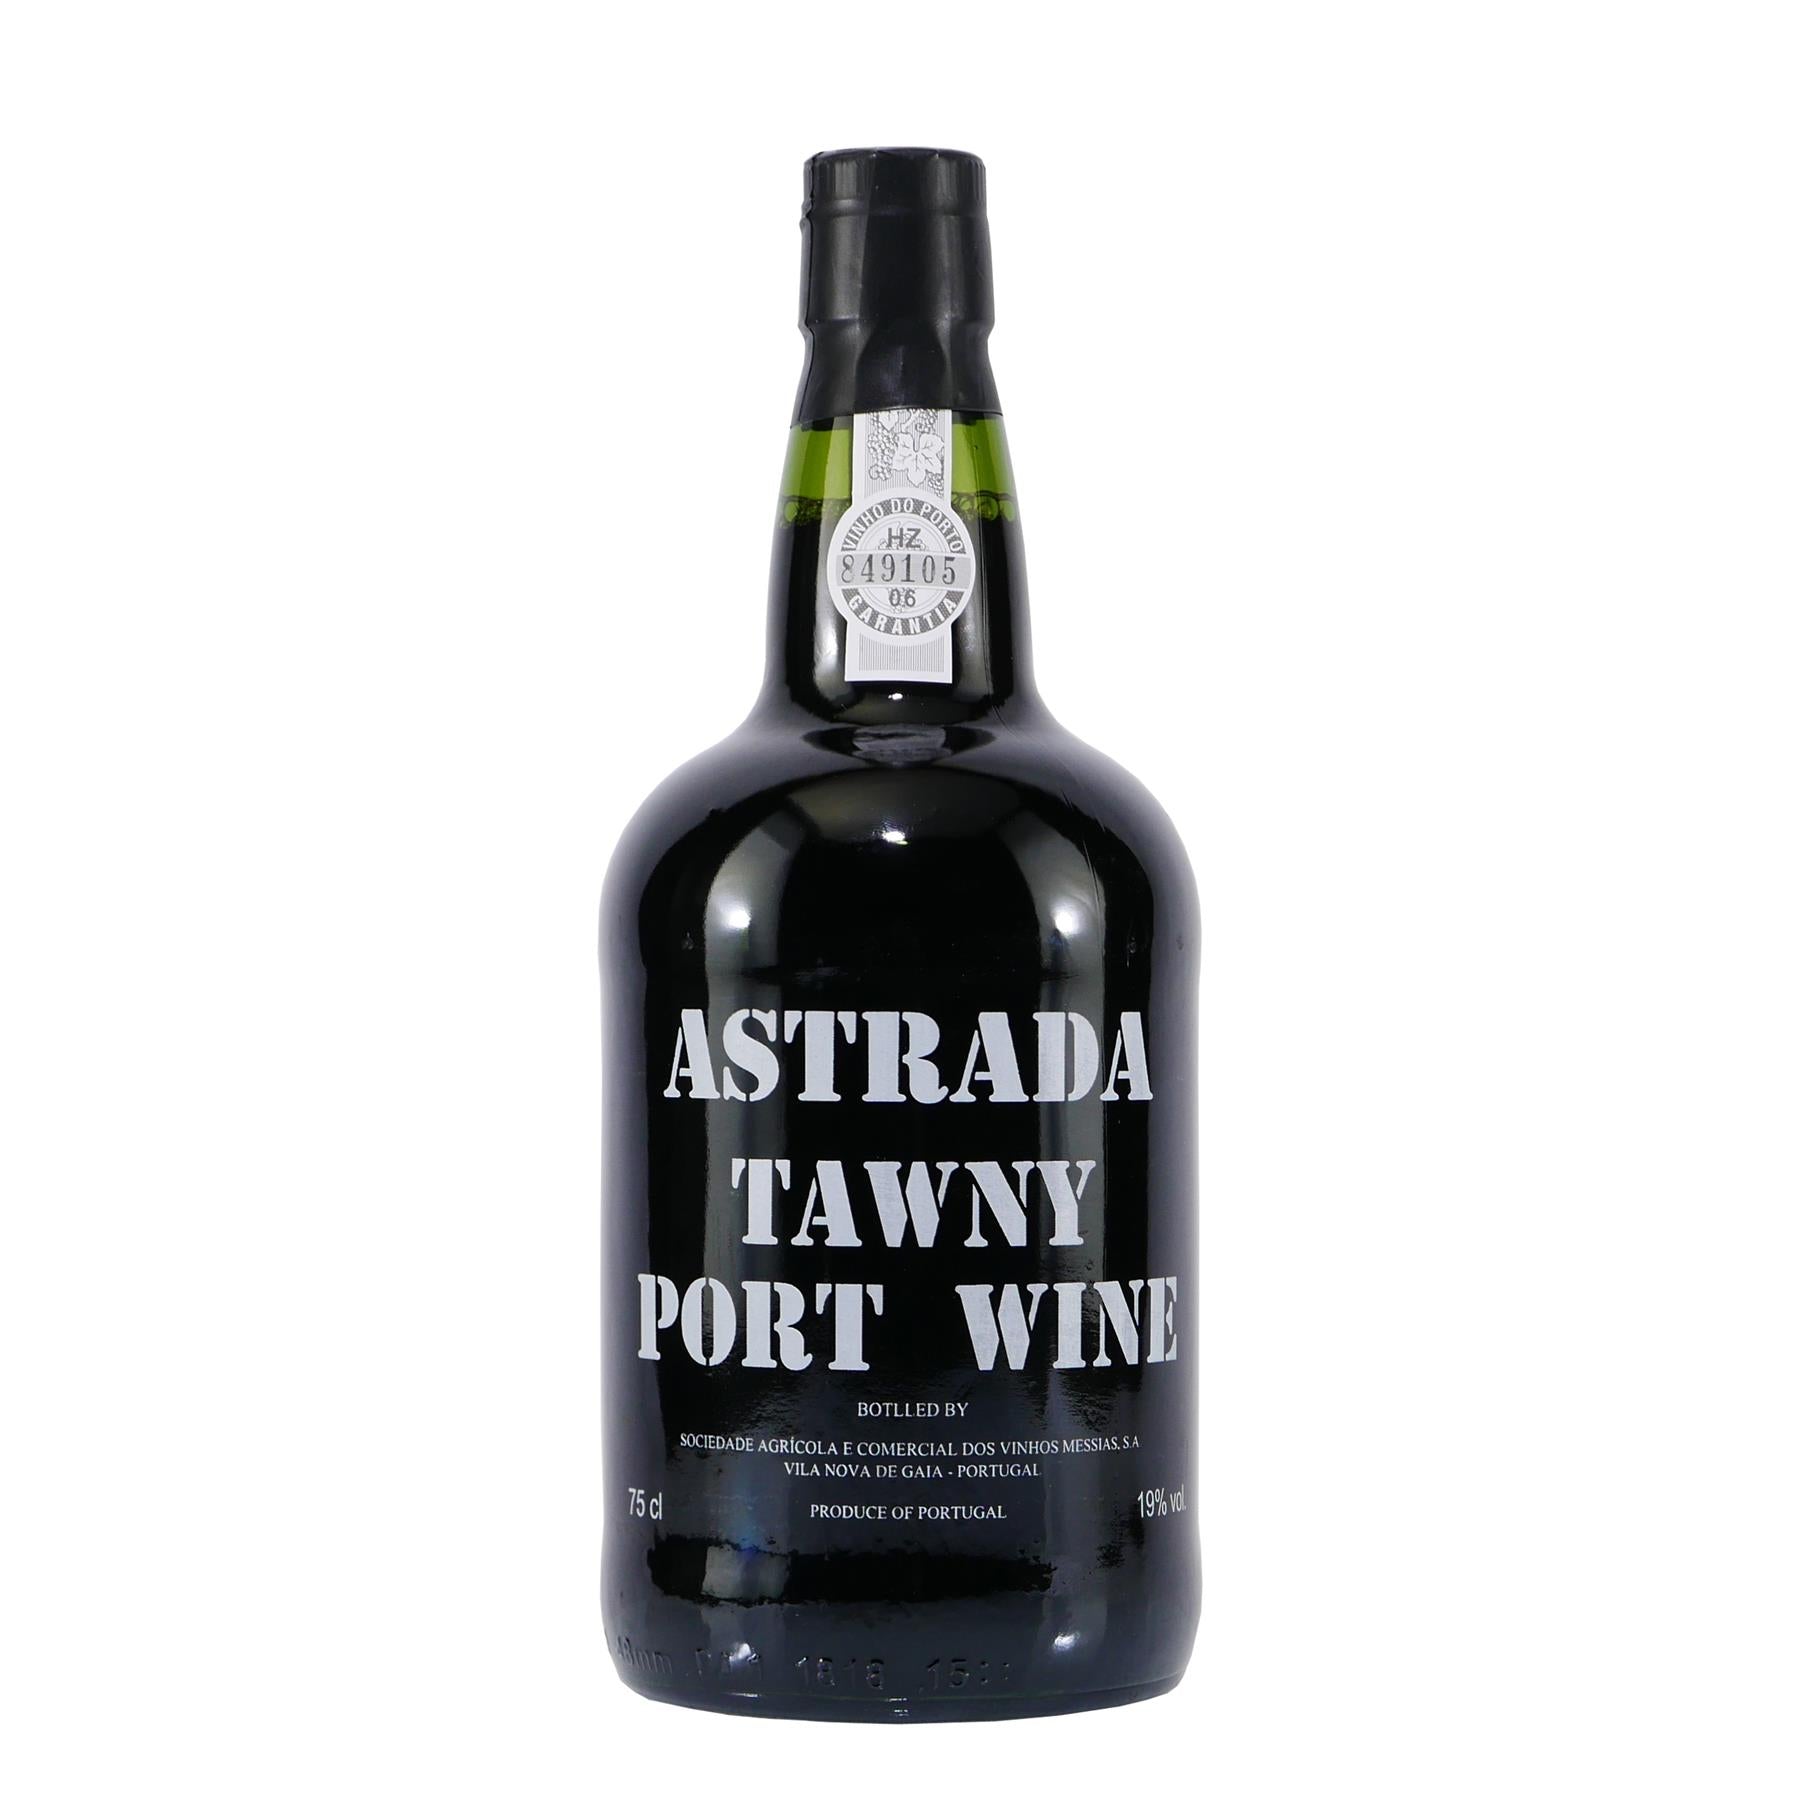 Astrada Tawny Portwein (6 x 0,75L)